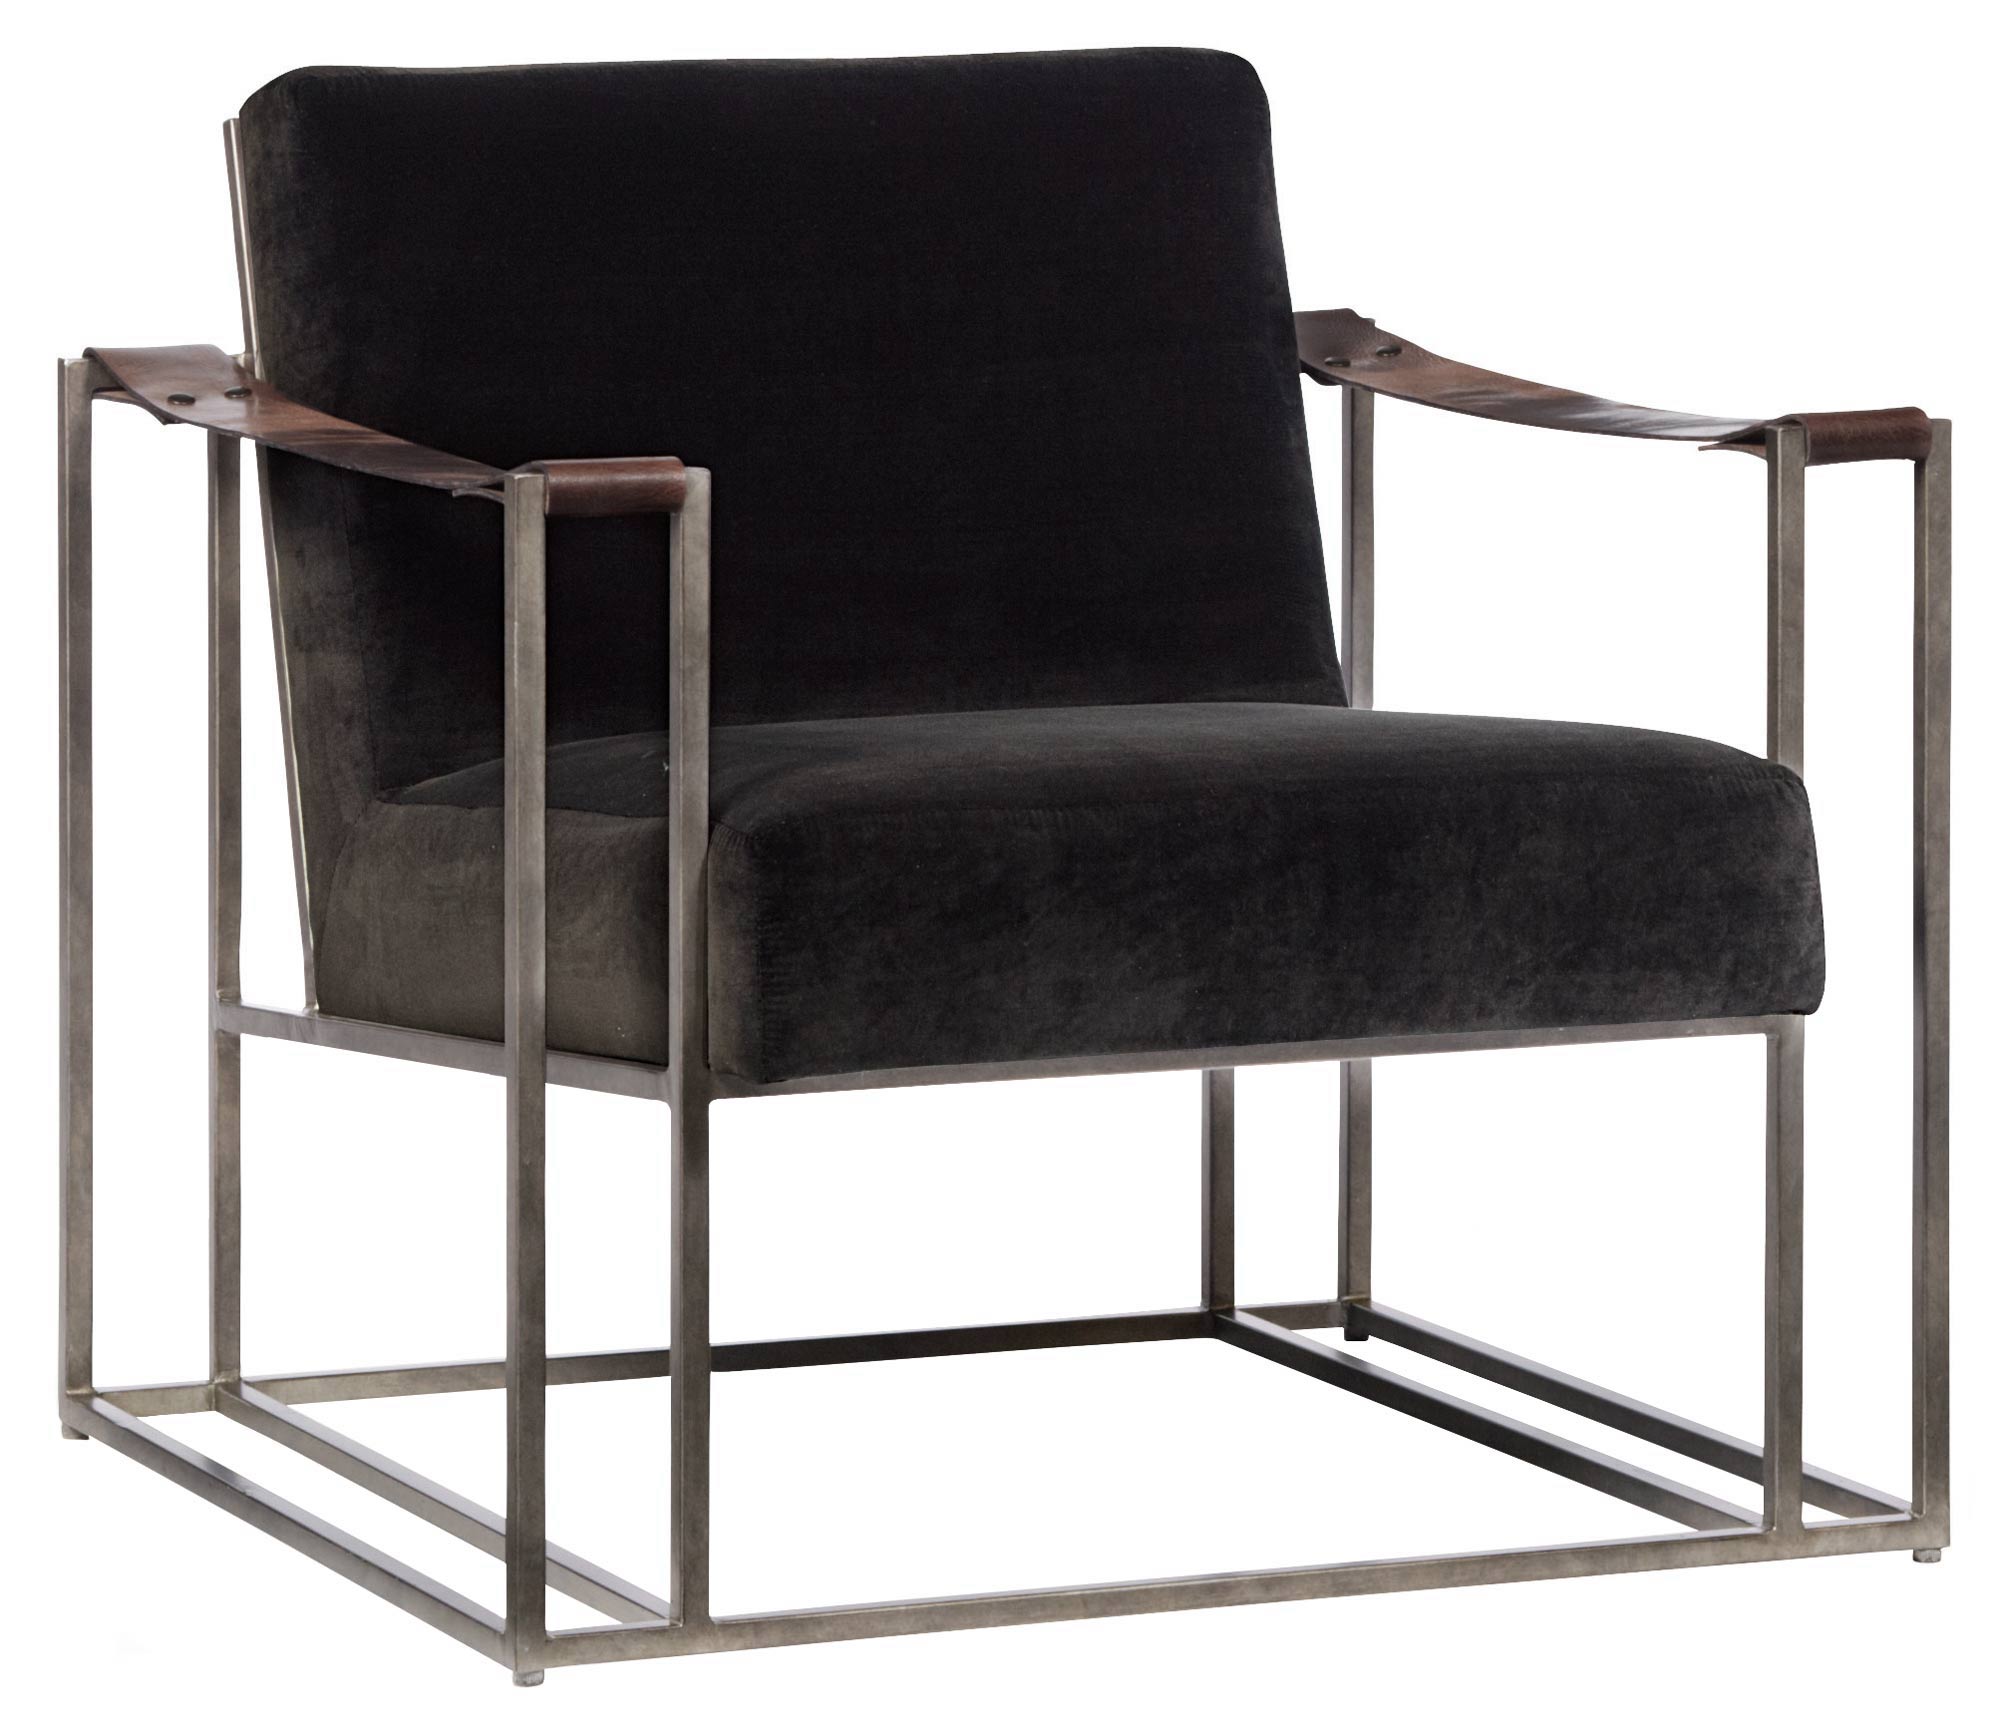 Bernhardt Furniture Dekker Chair